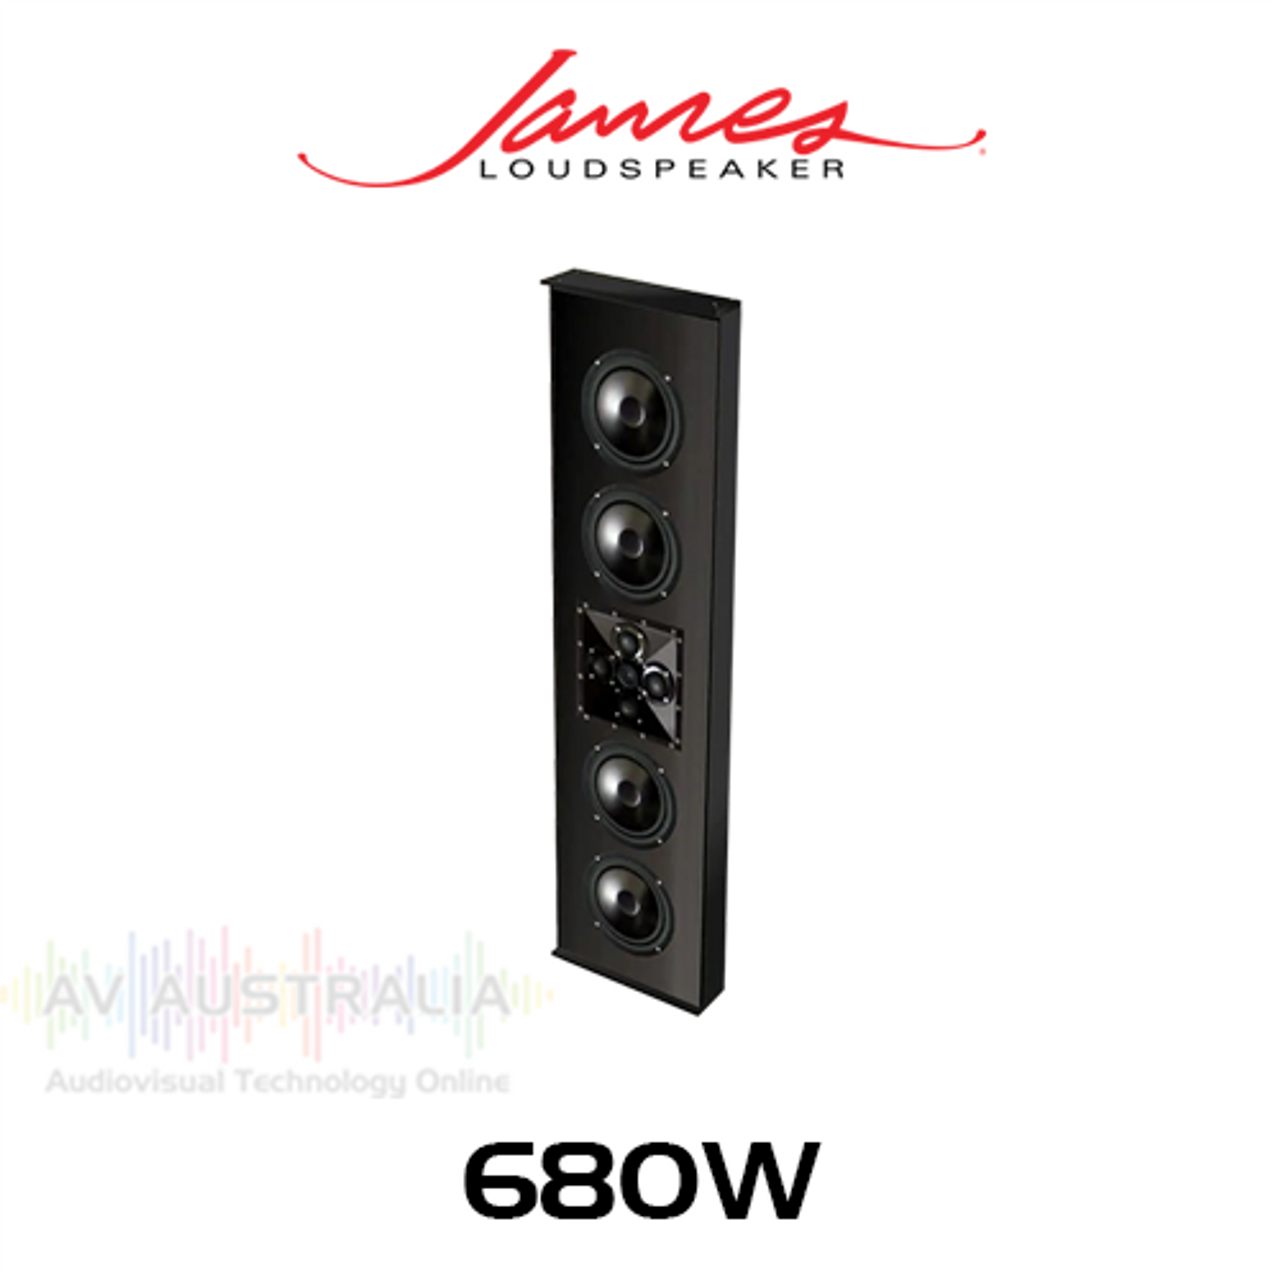 James Loudspeaker 68OW Quad 6.5" 3-Way On-Wall Loudspeaker (Each)